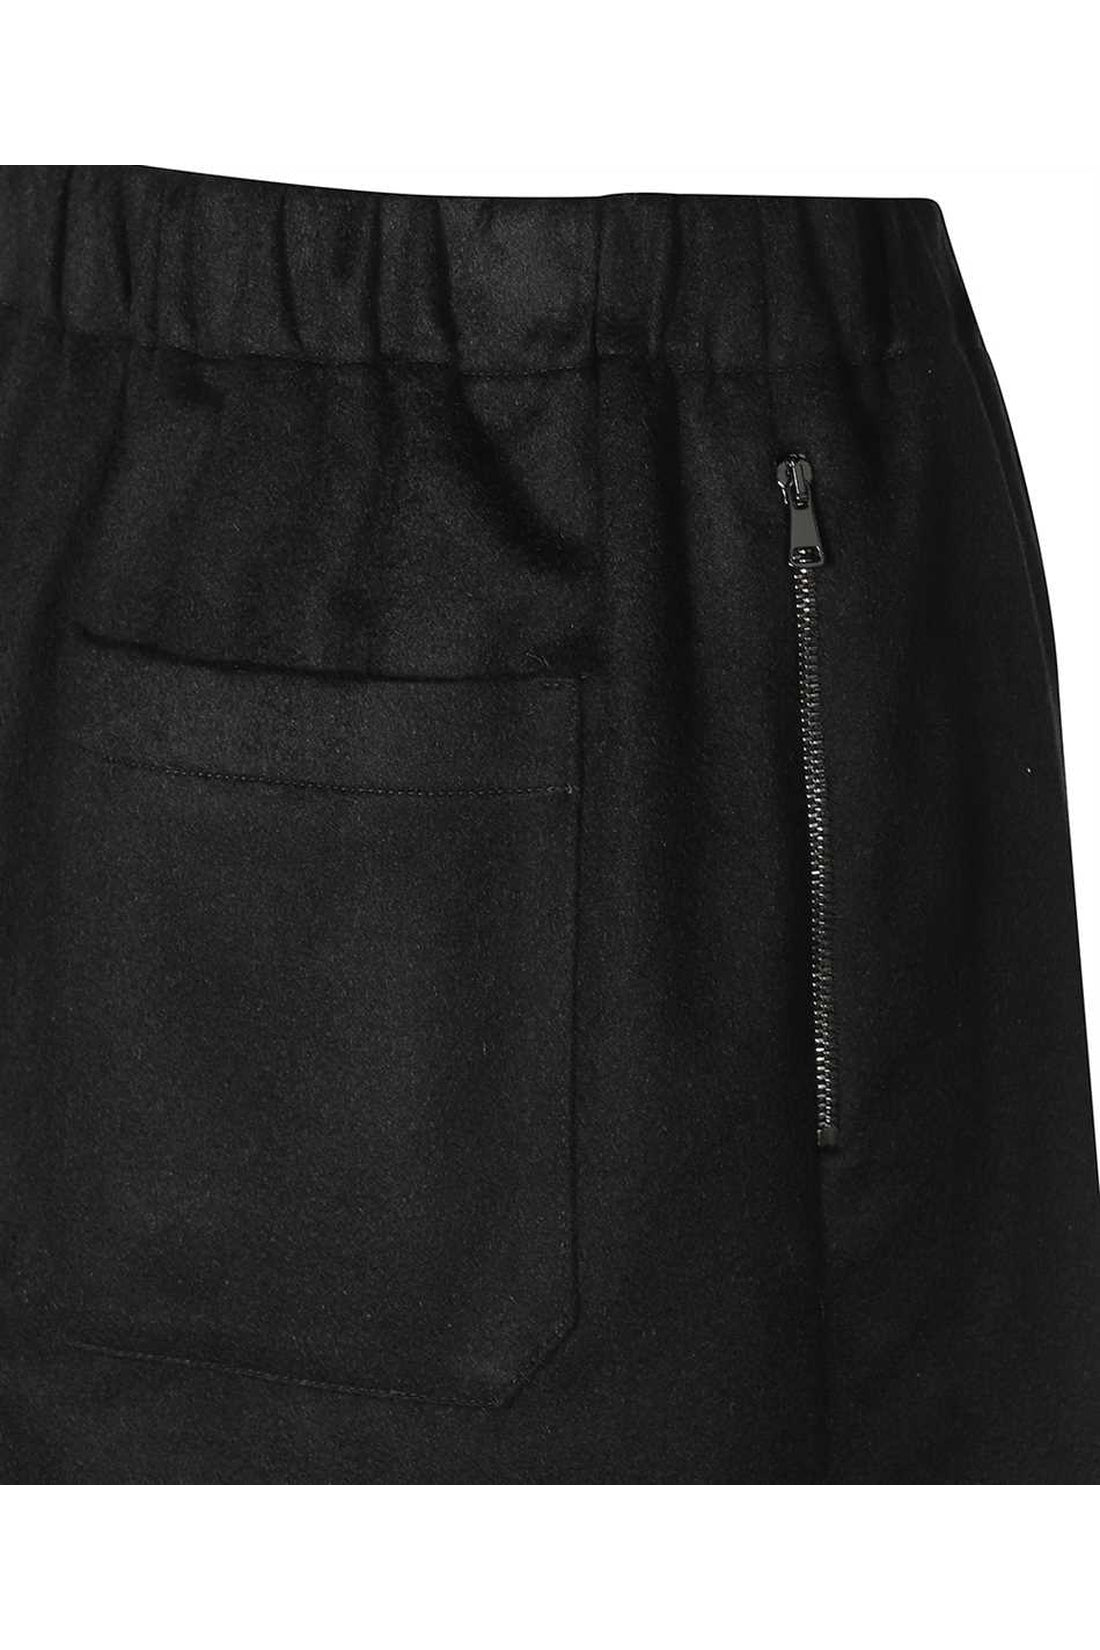 Max Mara-OUTLET-SALE-Ottavia mini skirt-ARCHIVIST